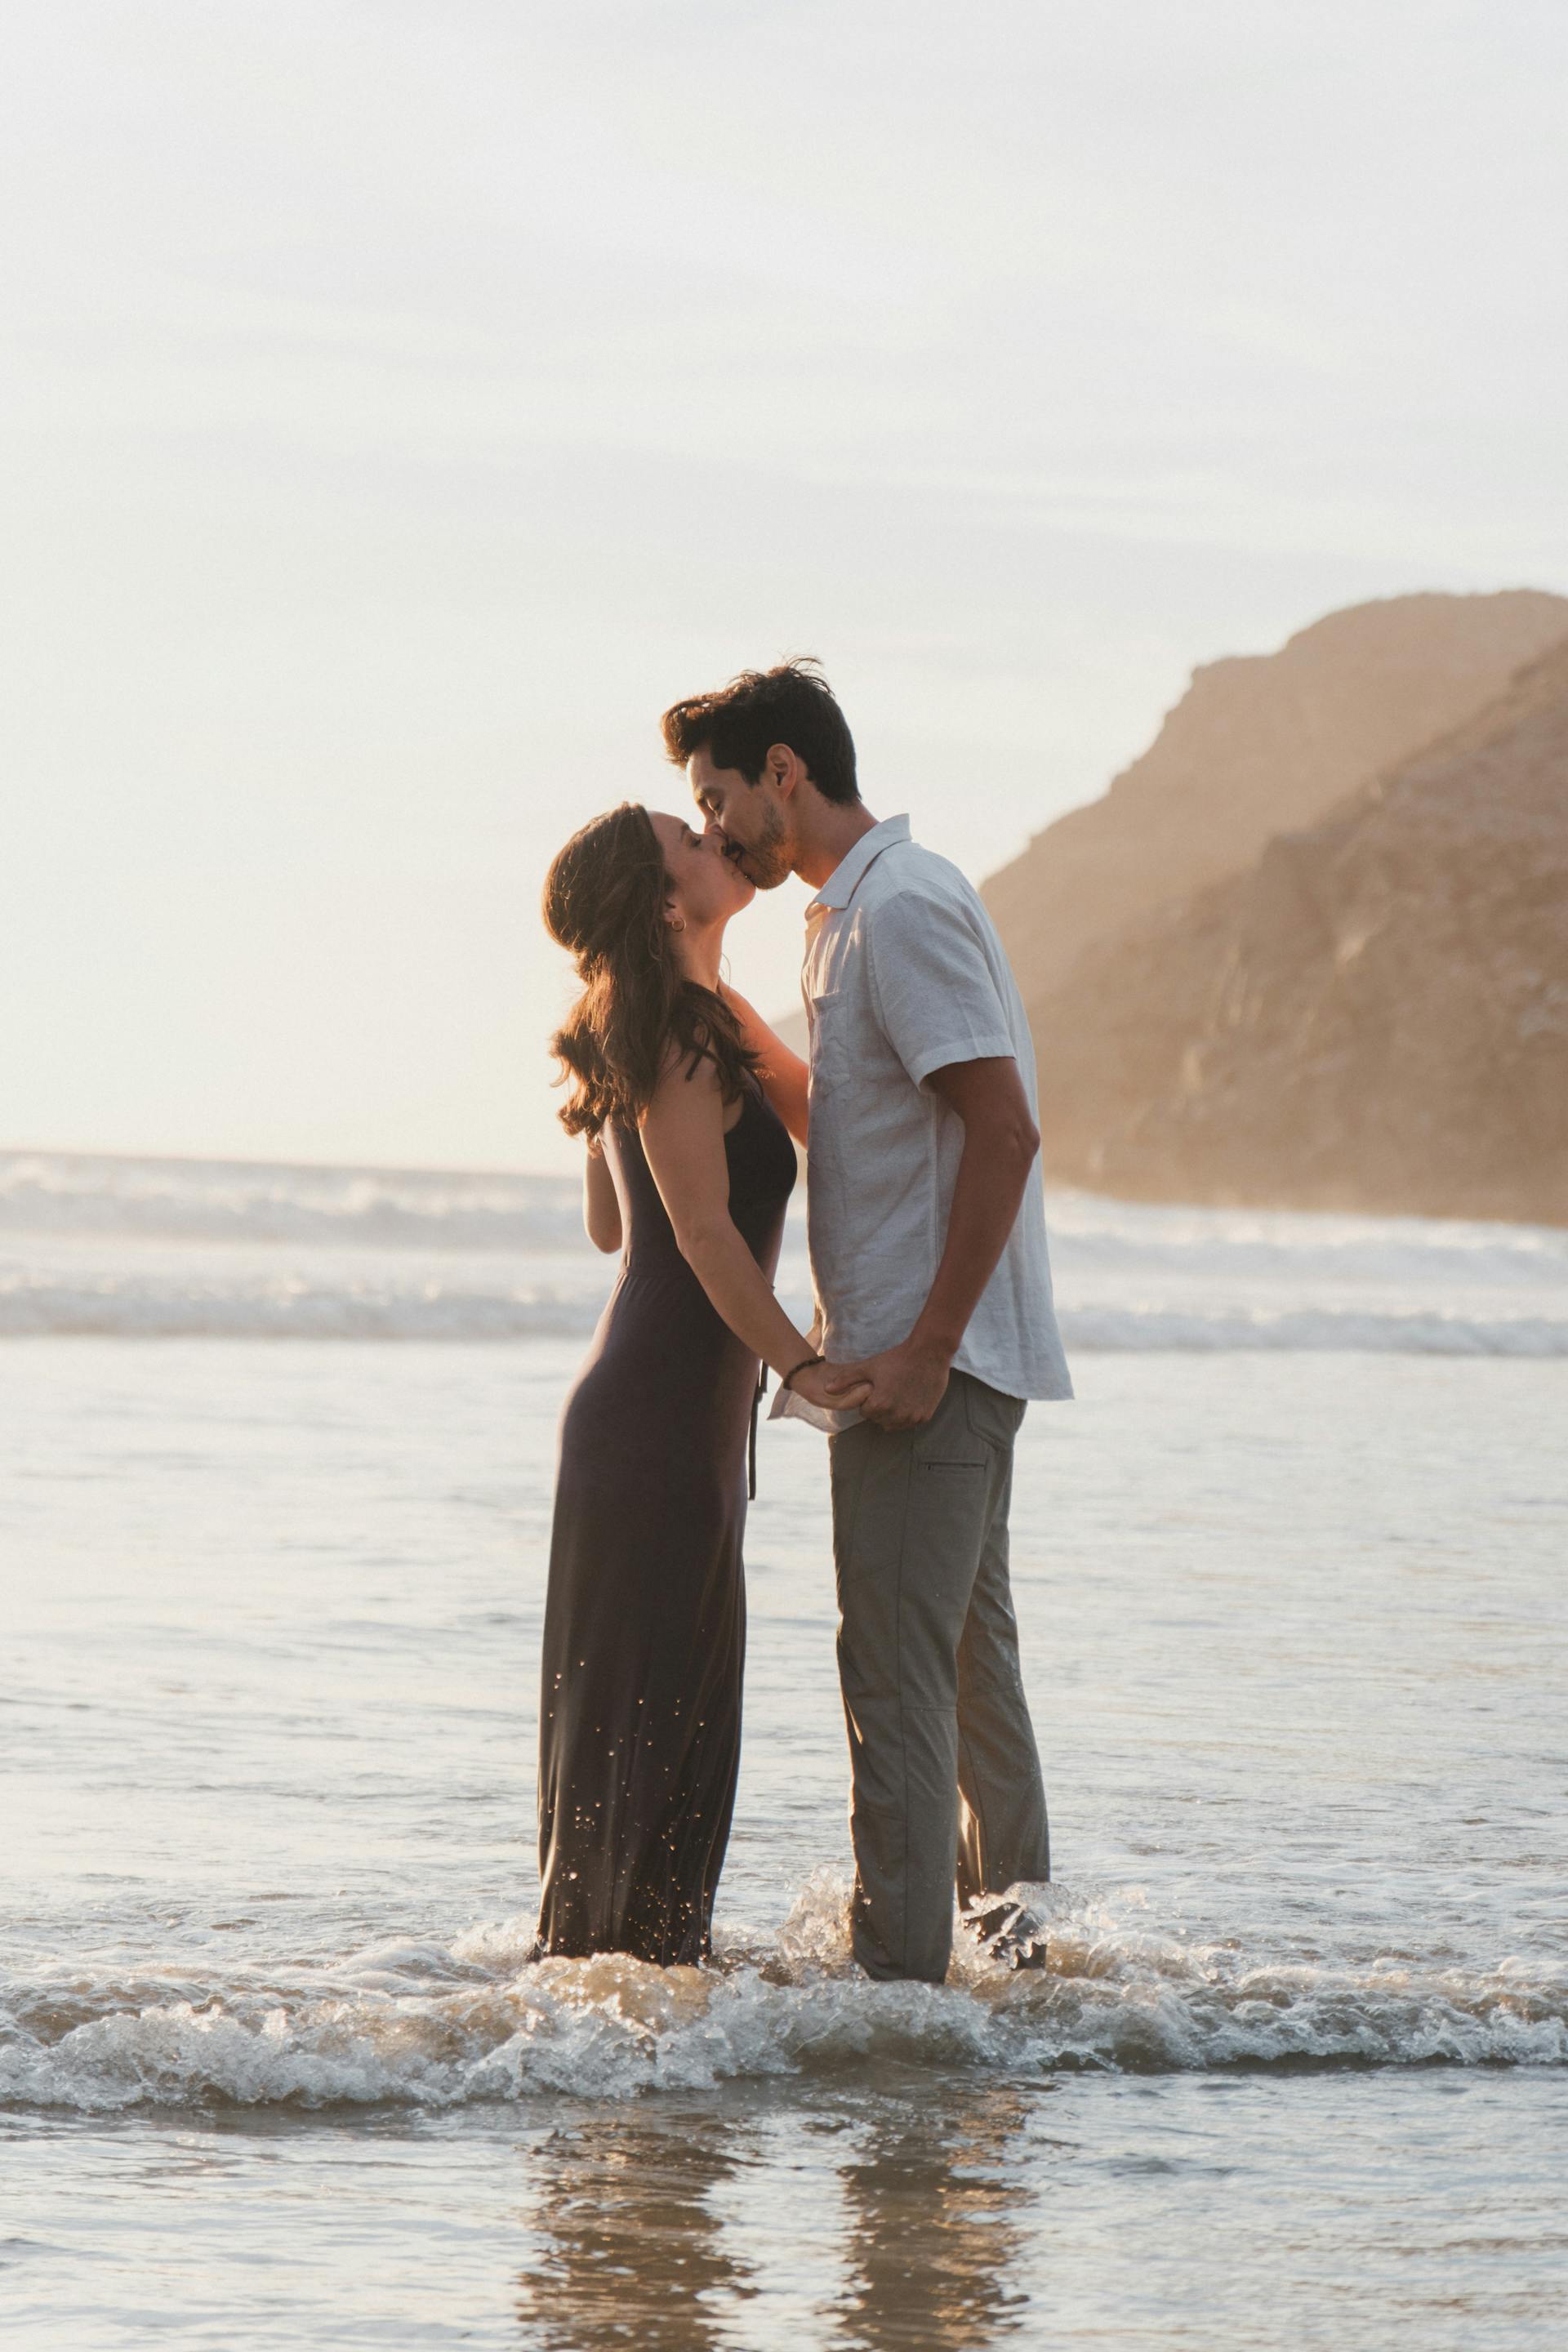 Una pareja besándose con los tobillos metidos en el mar | Fuente: Pexels